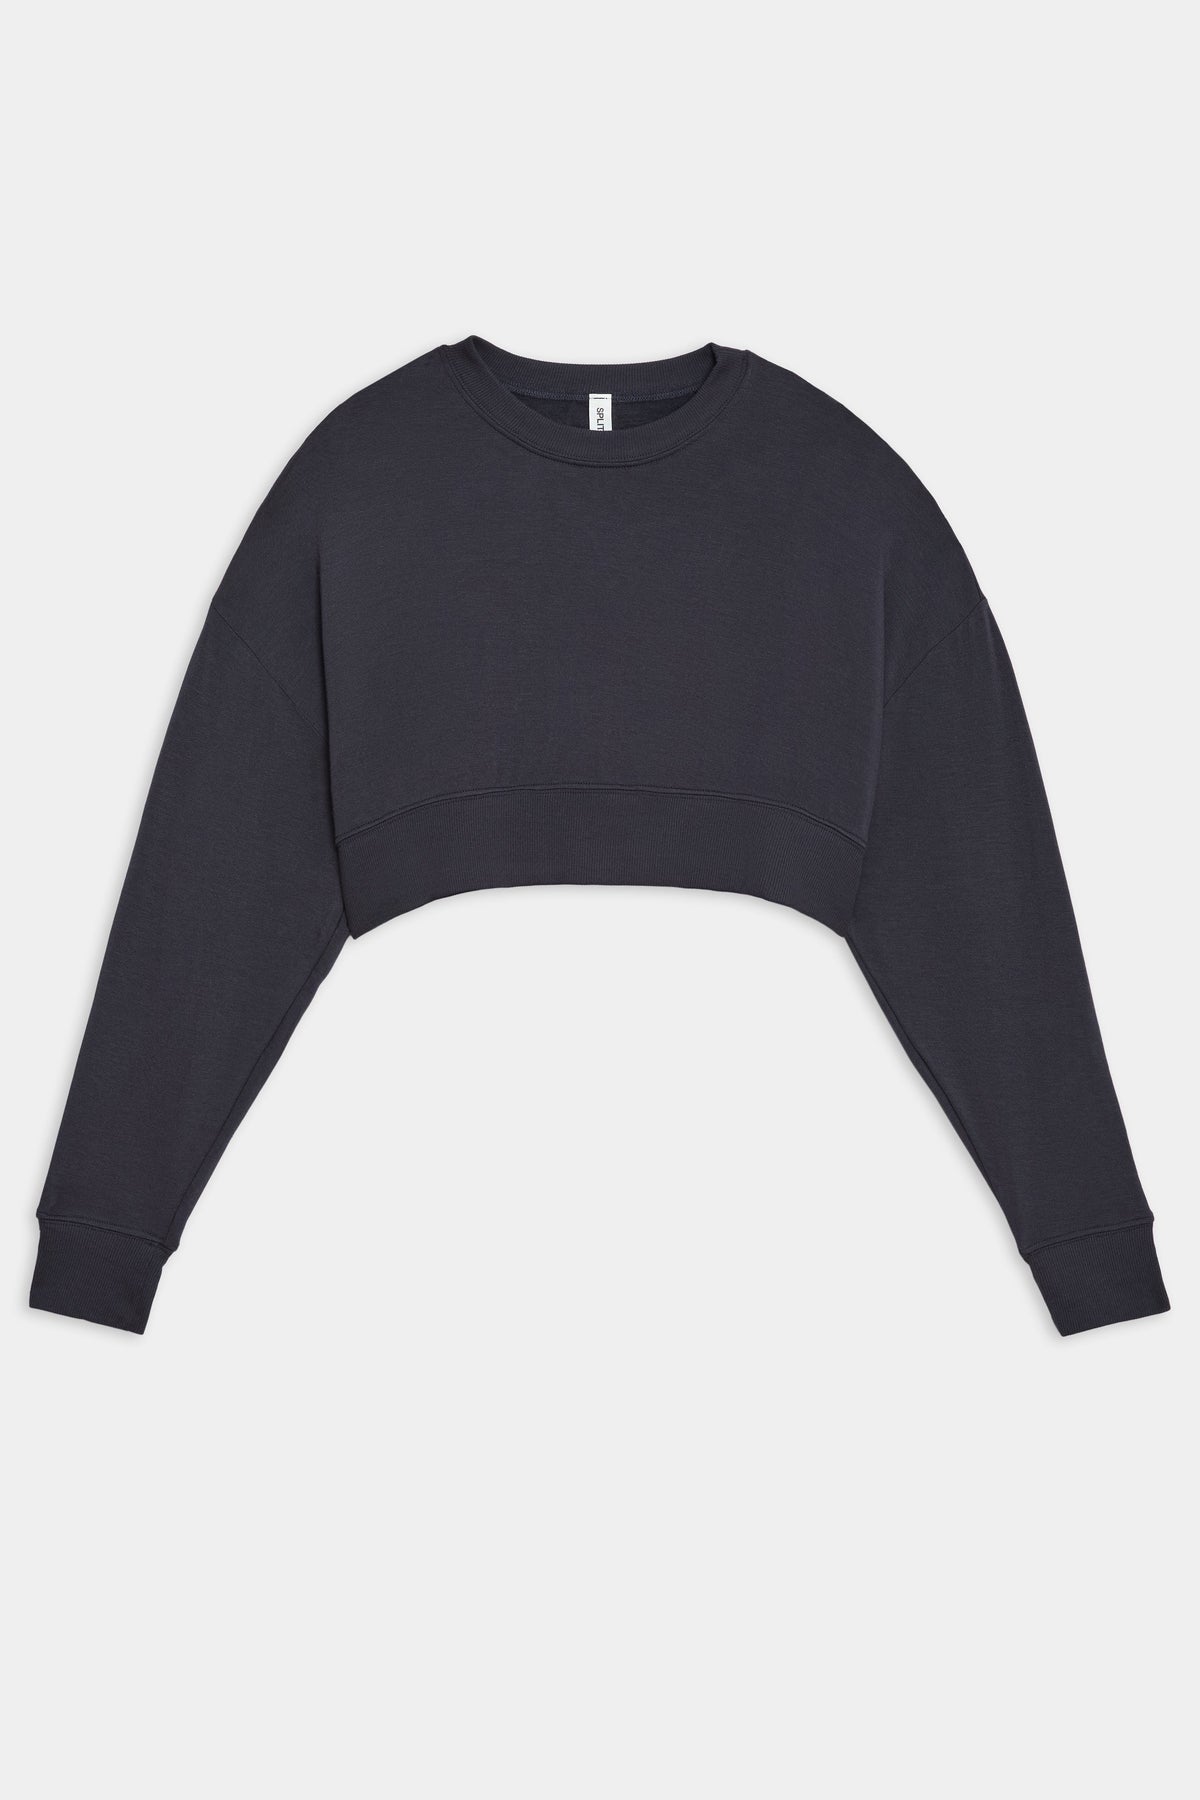 Splits59 Noah Fleece Crop Sweatshirt – The Shop at Equinox